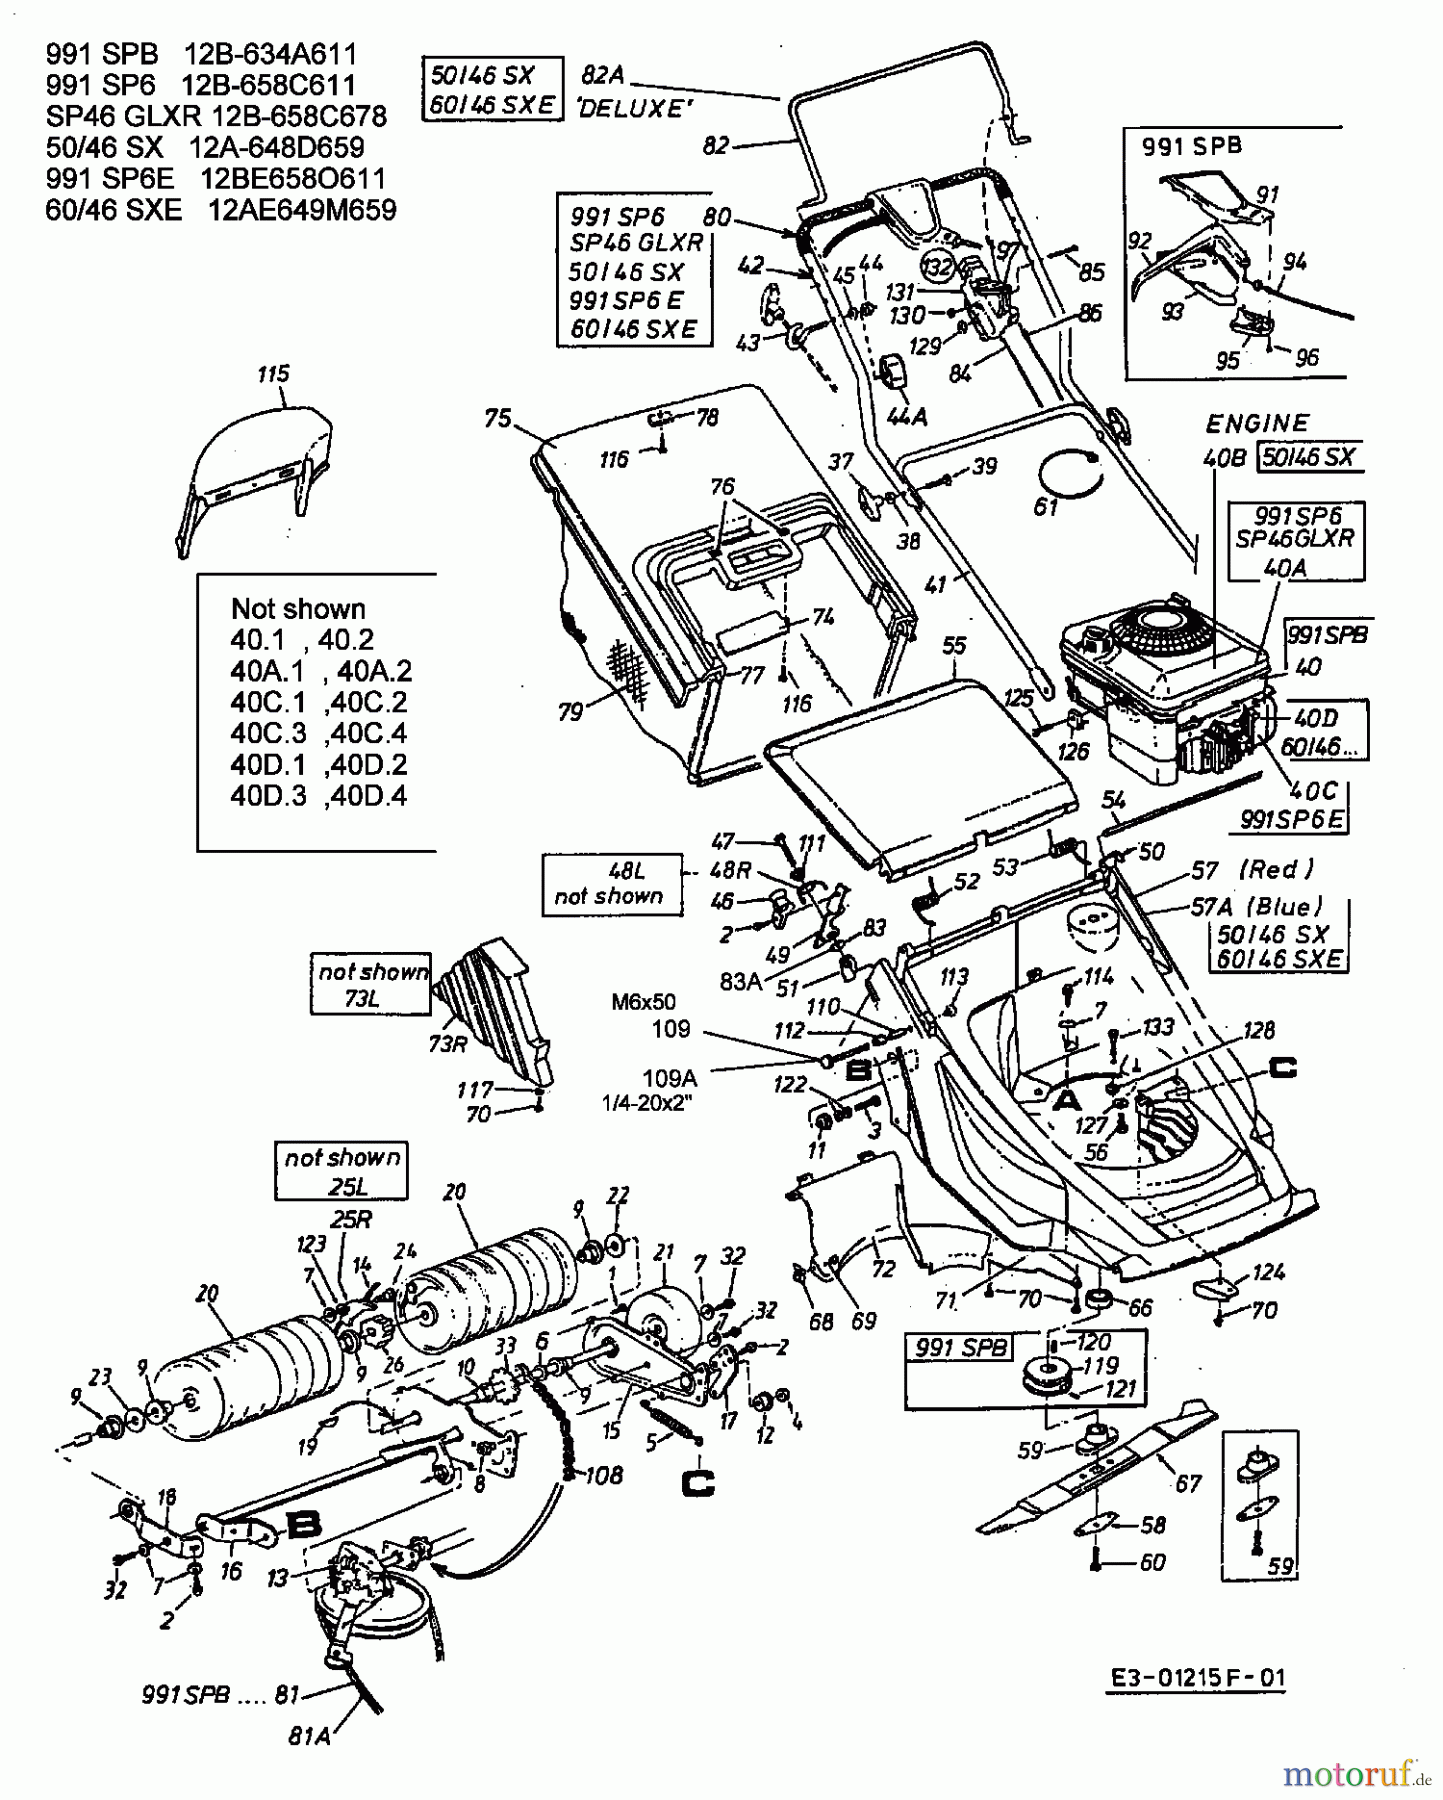  Lawnflite Motormäher mit Antrieb 991 SP 6 12B-658C611  (2003) Grundgerät